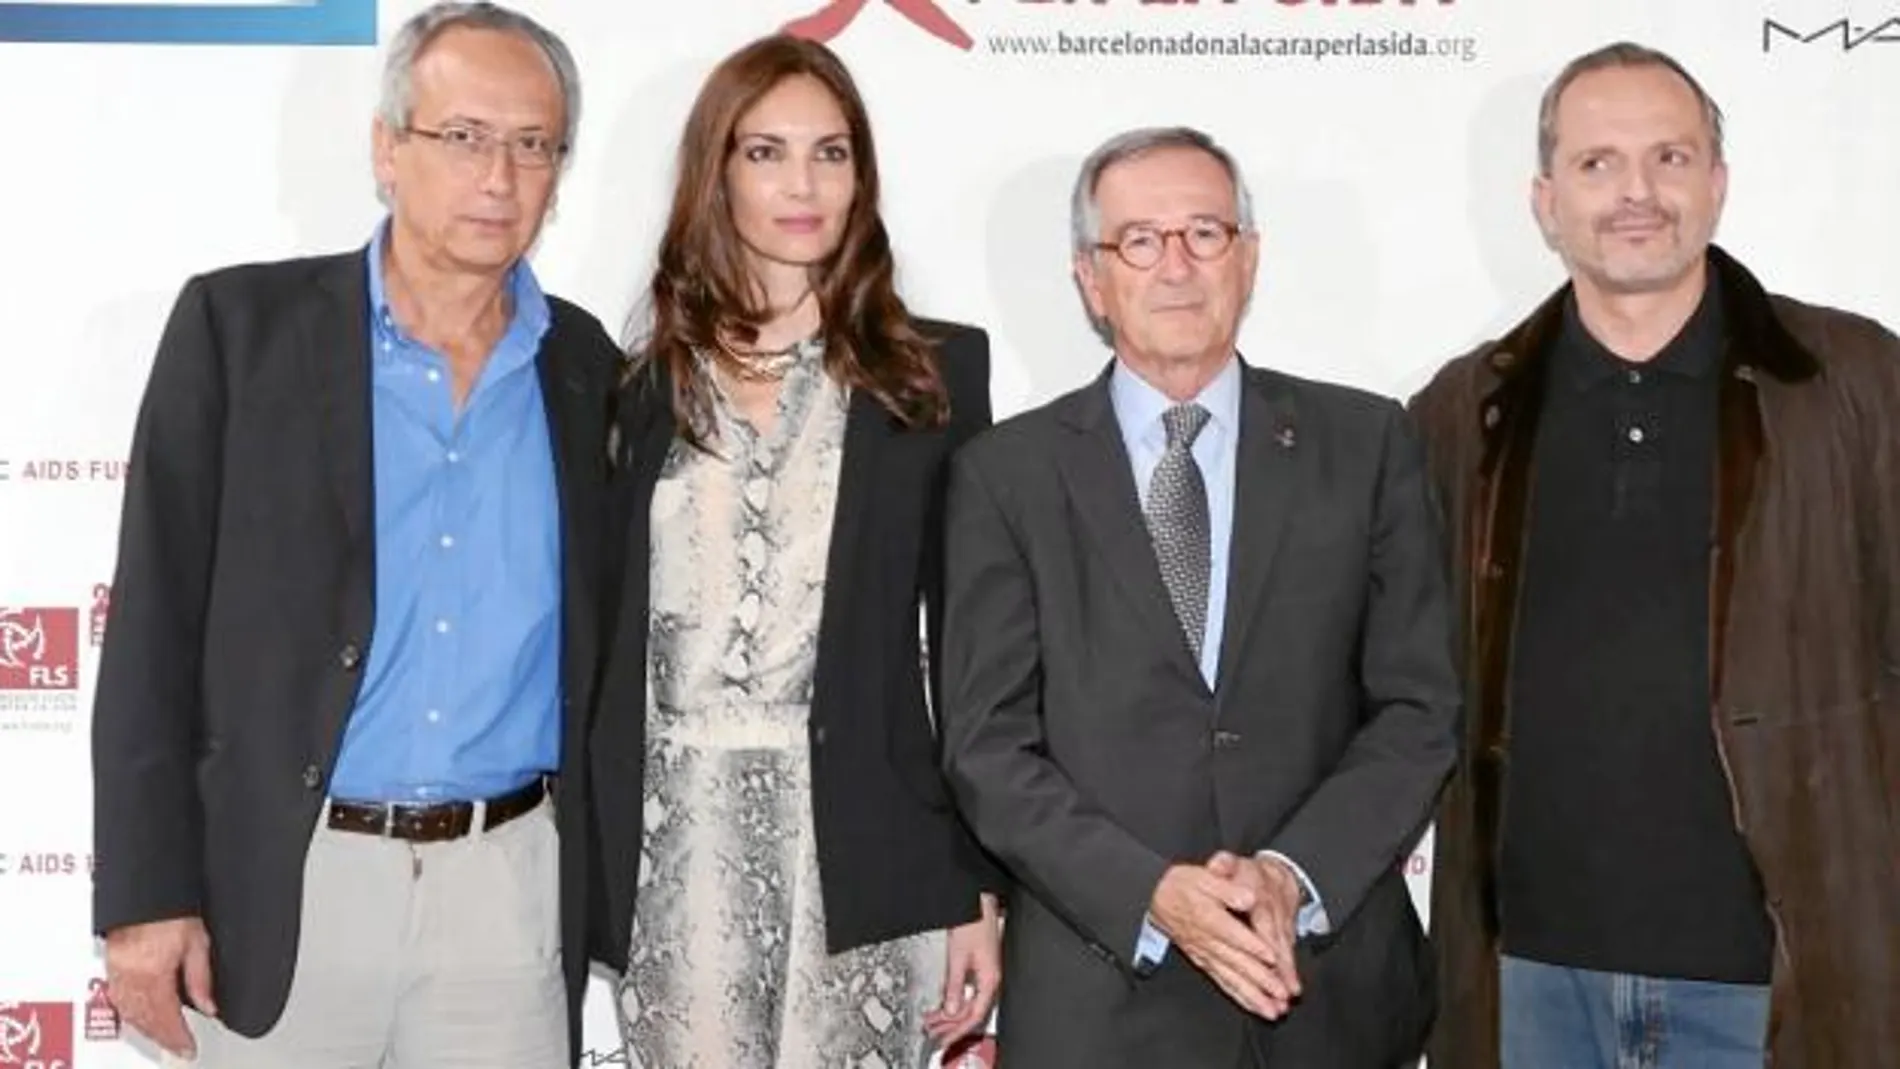 Bonaventura Clotet, Eugenia Silva, Xavier Trias y Miguel Bosé, ayer en la presentación de la campaña